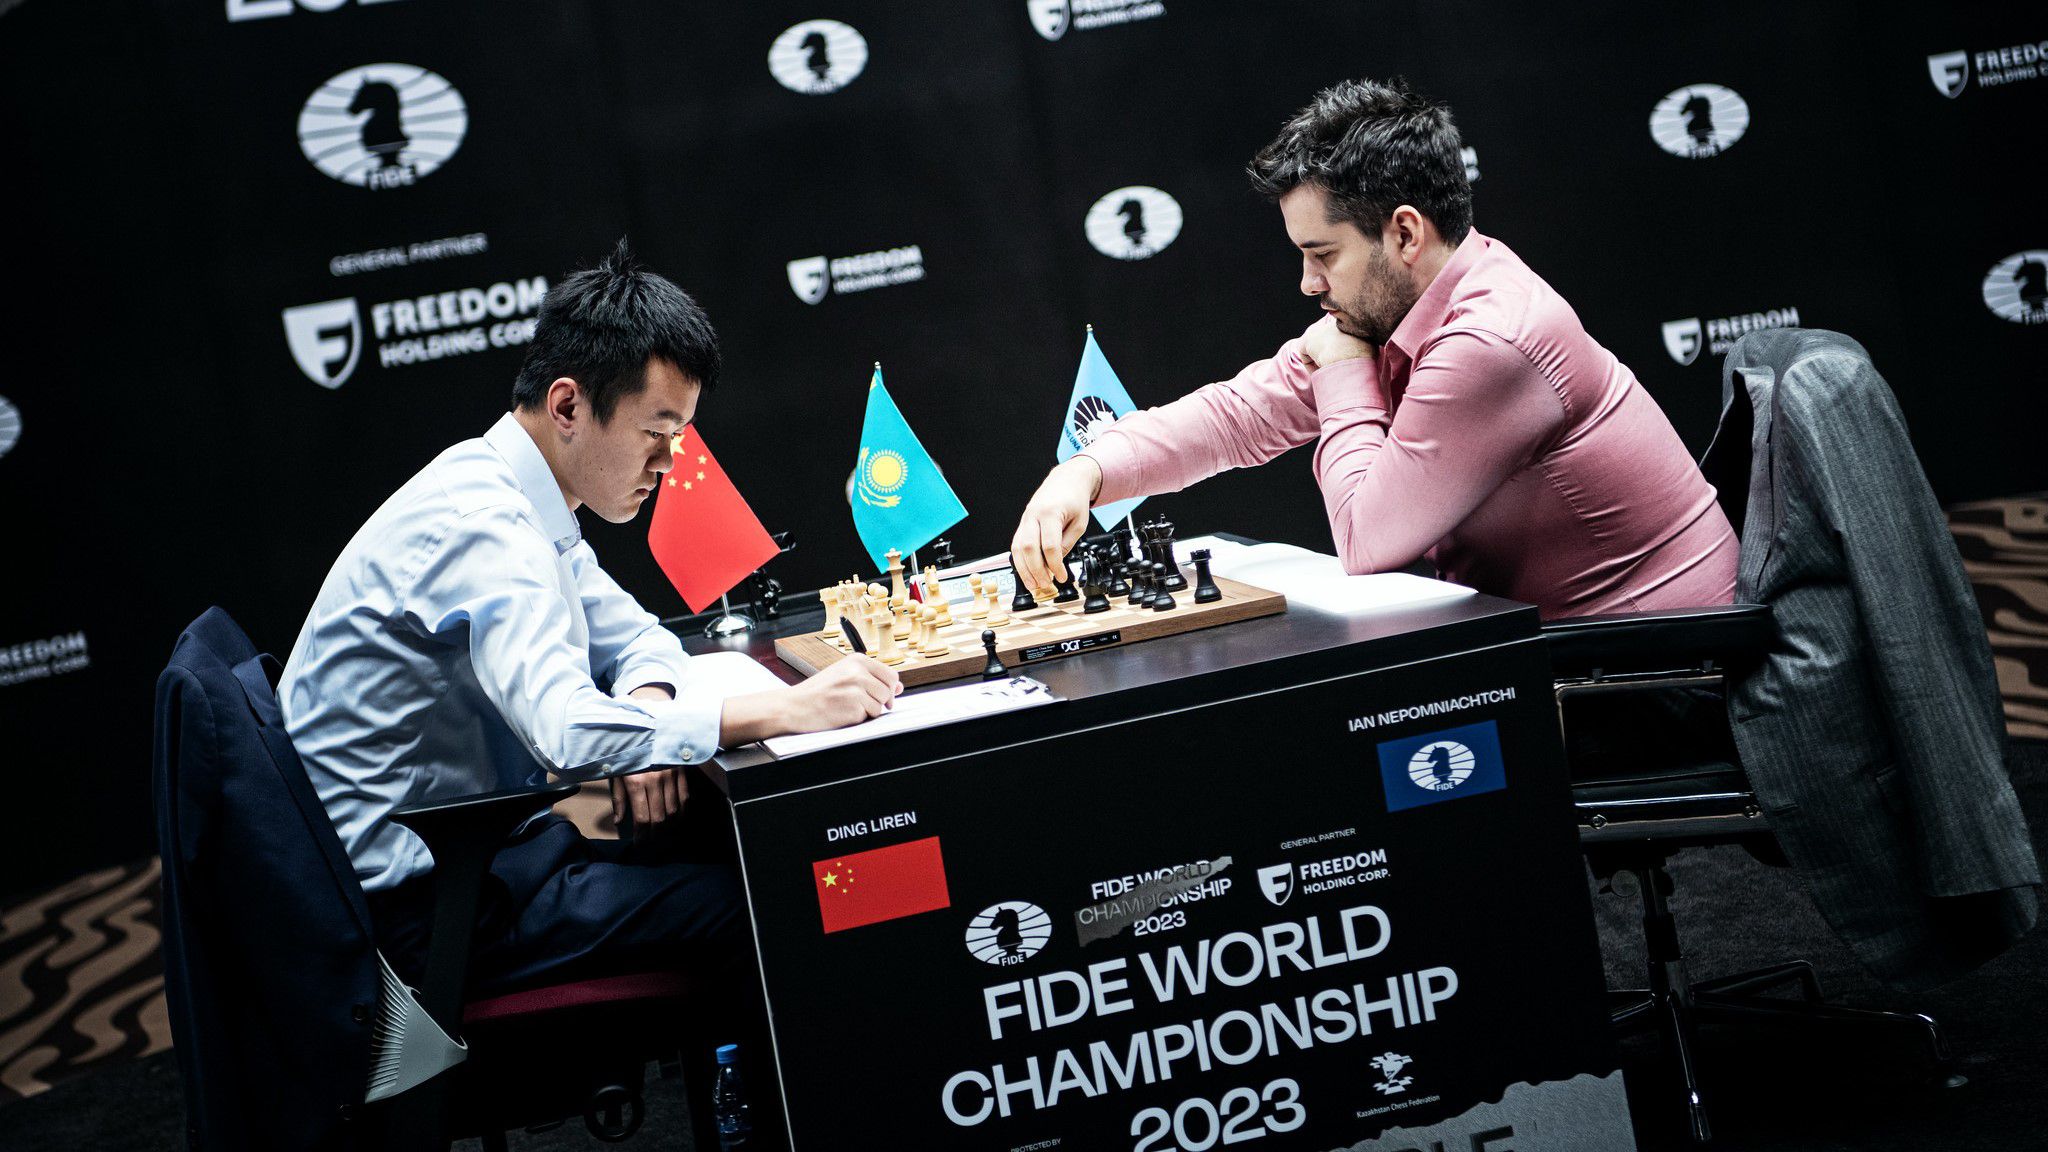 Az orosz vissza tudta verni a kínai támadást (Fotó: FIDE/Stev Bonhage)